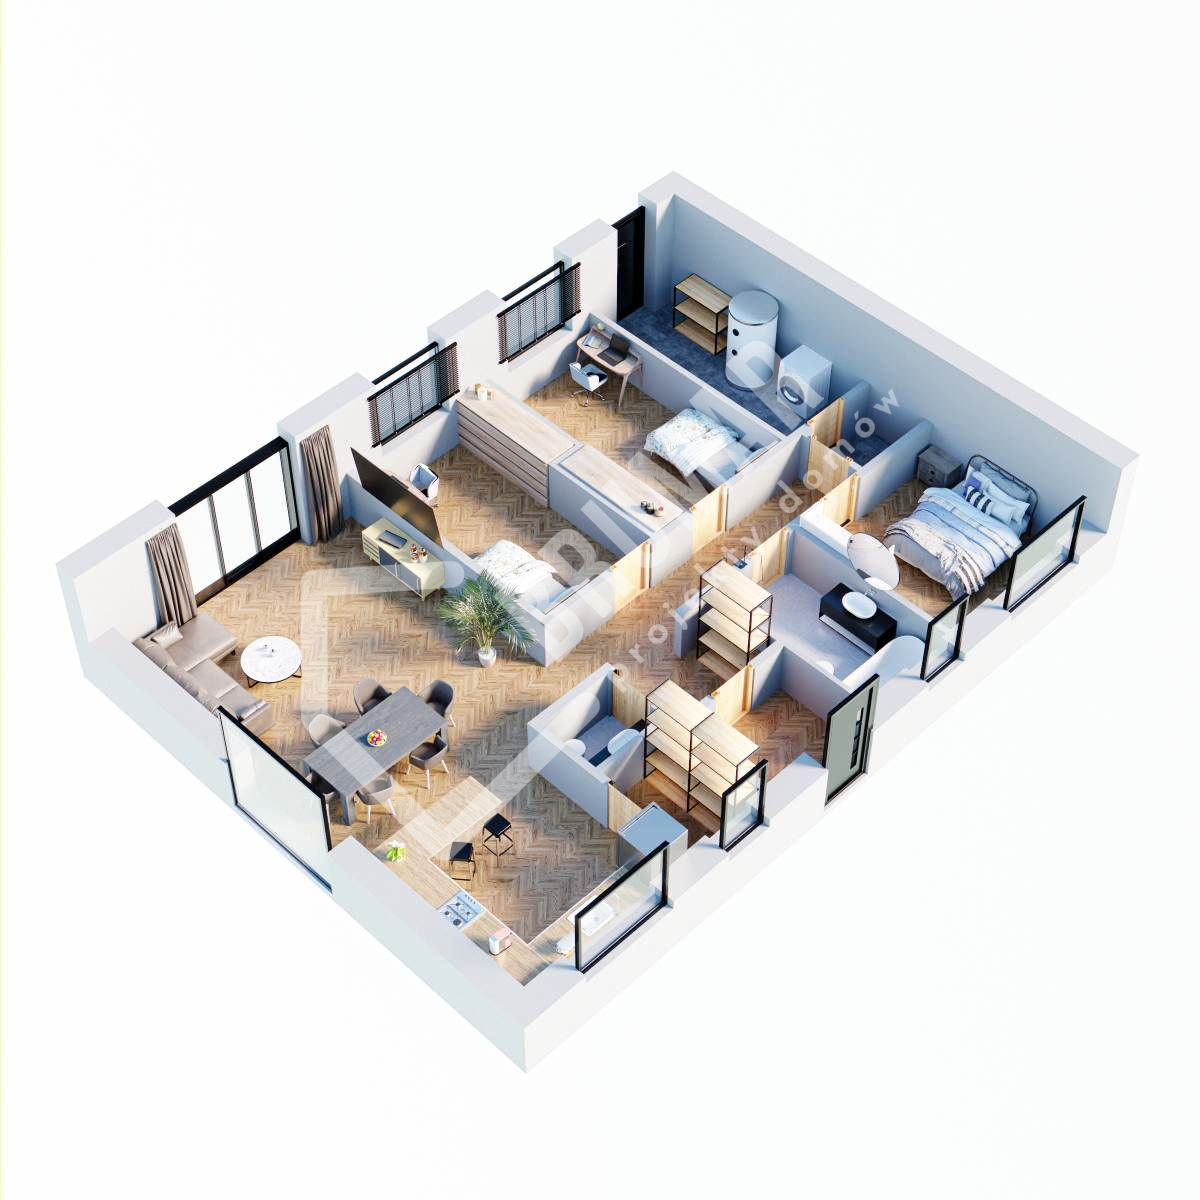 Projekt domu parterowego 100m2 - zaplanuj swoje przestrzenie życiowe z wykorzystaniem rzutu 3D.